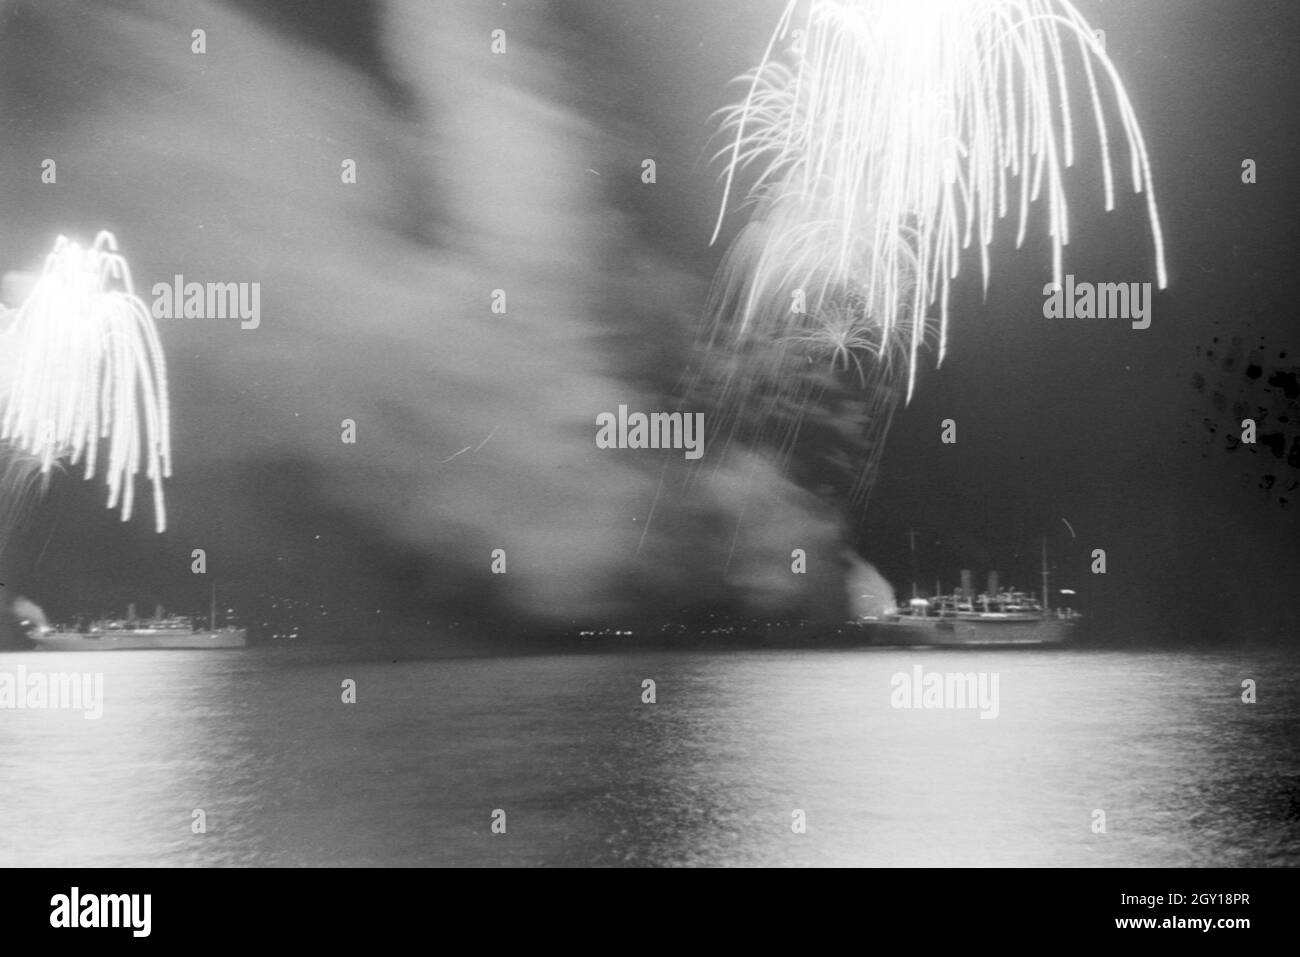 Ein grosses Feuerwerk une einem Hafen en Italie, années 1930 er Jahre. Grand feu d'artifice à un port en Italie, 1930. Banque D'Images